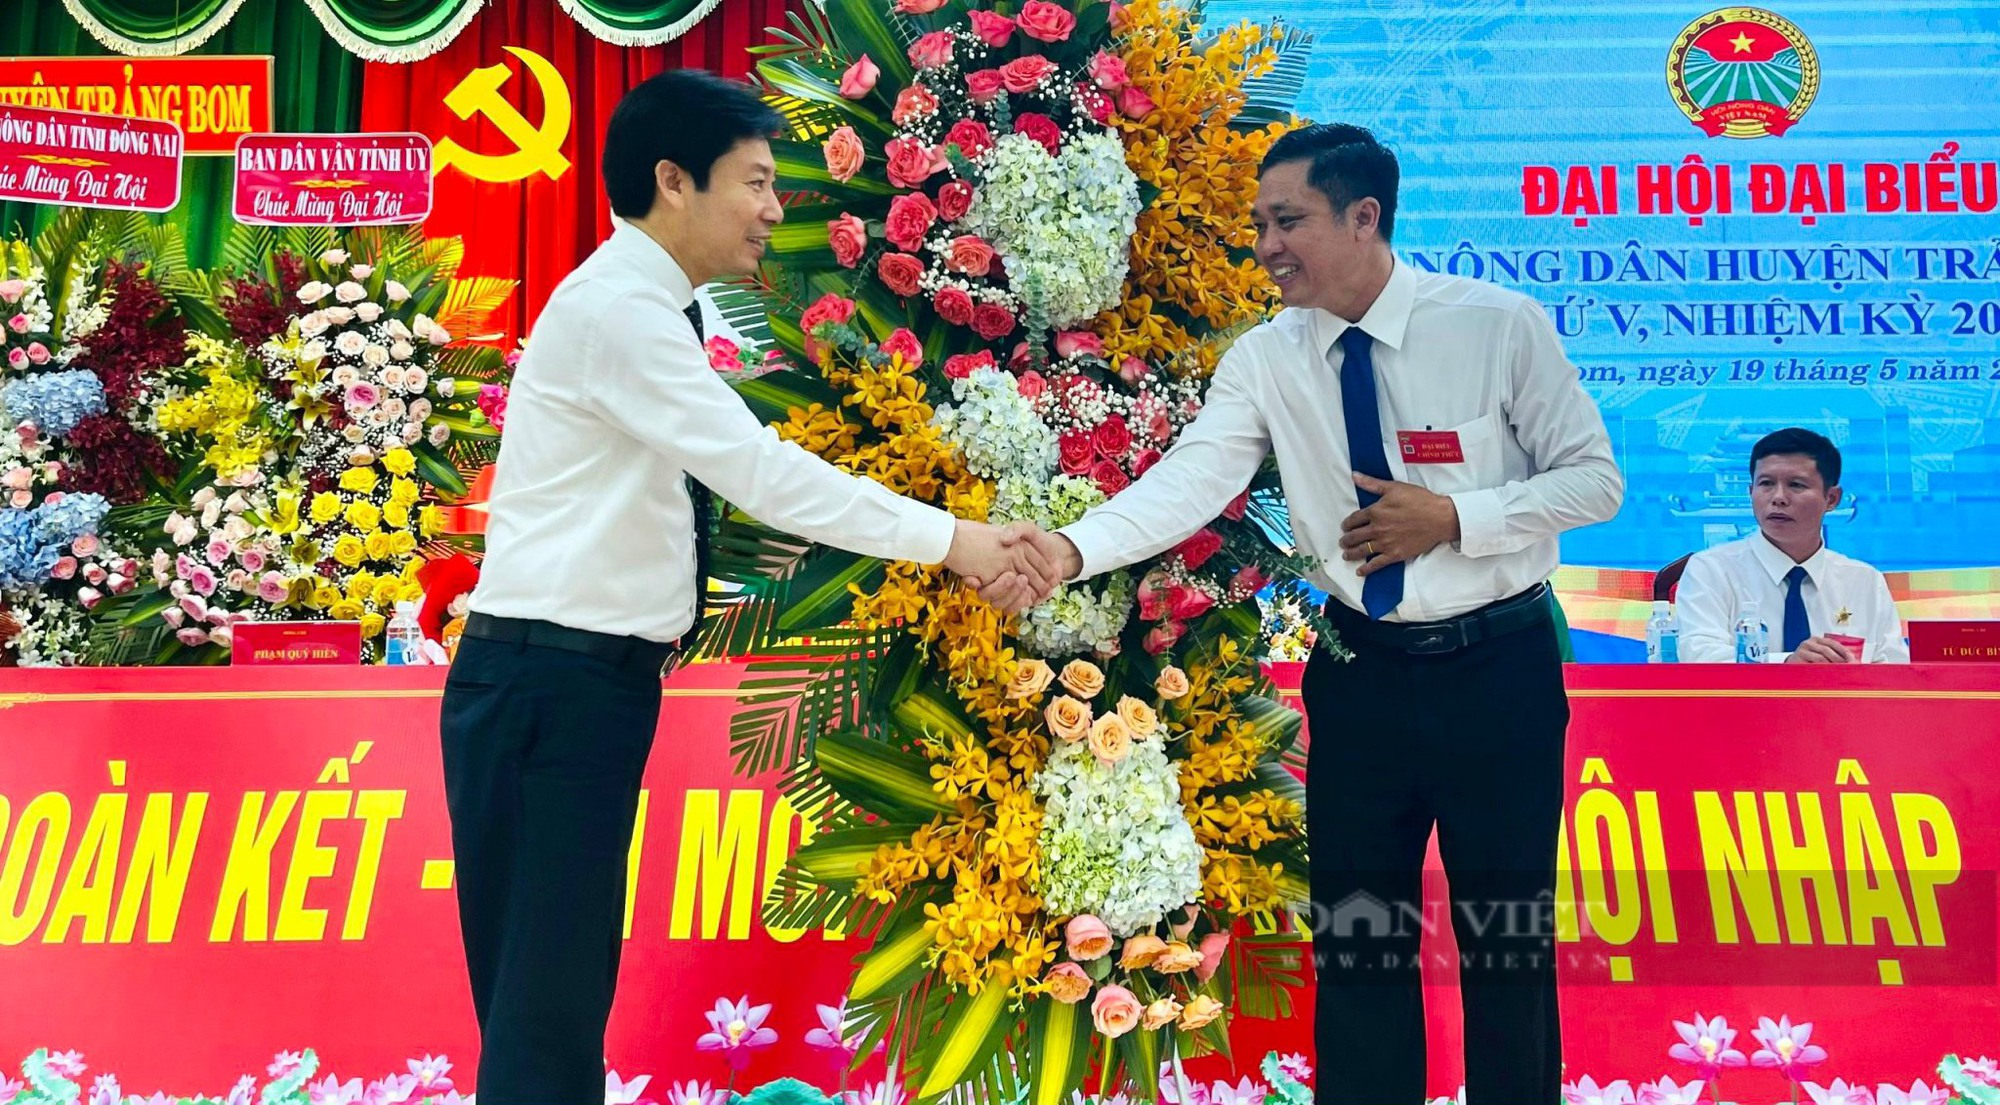 Phó Chủ tịch TƯ Hội NDVN Nguyễn Xuân Định dự Đại hội đại biểu Hội Nông dân huyện Trảng Bom, Đồng Nai - Ảnh 5.